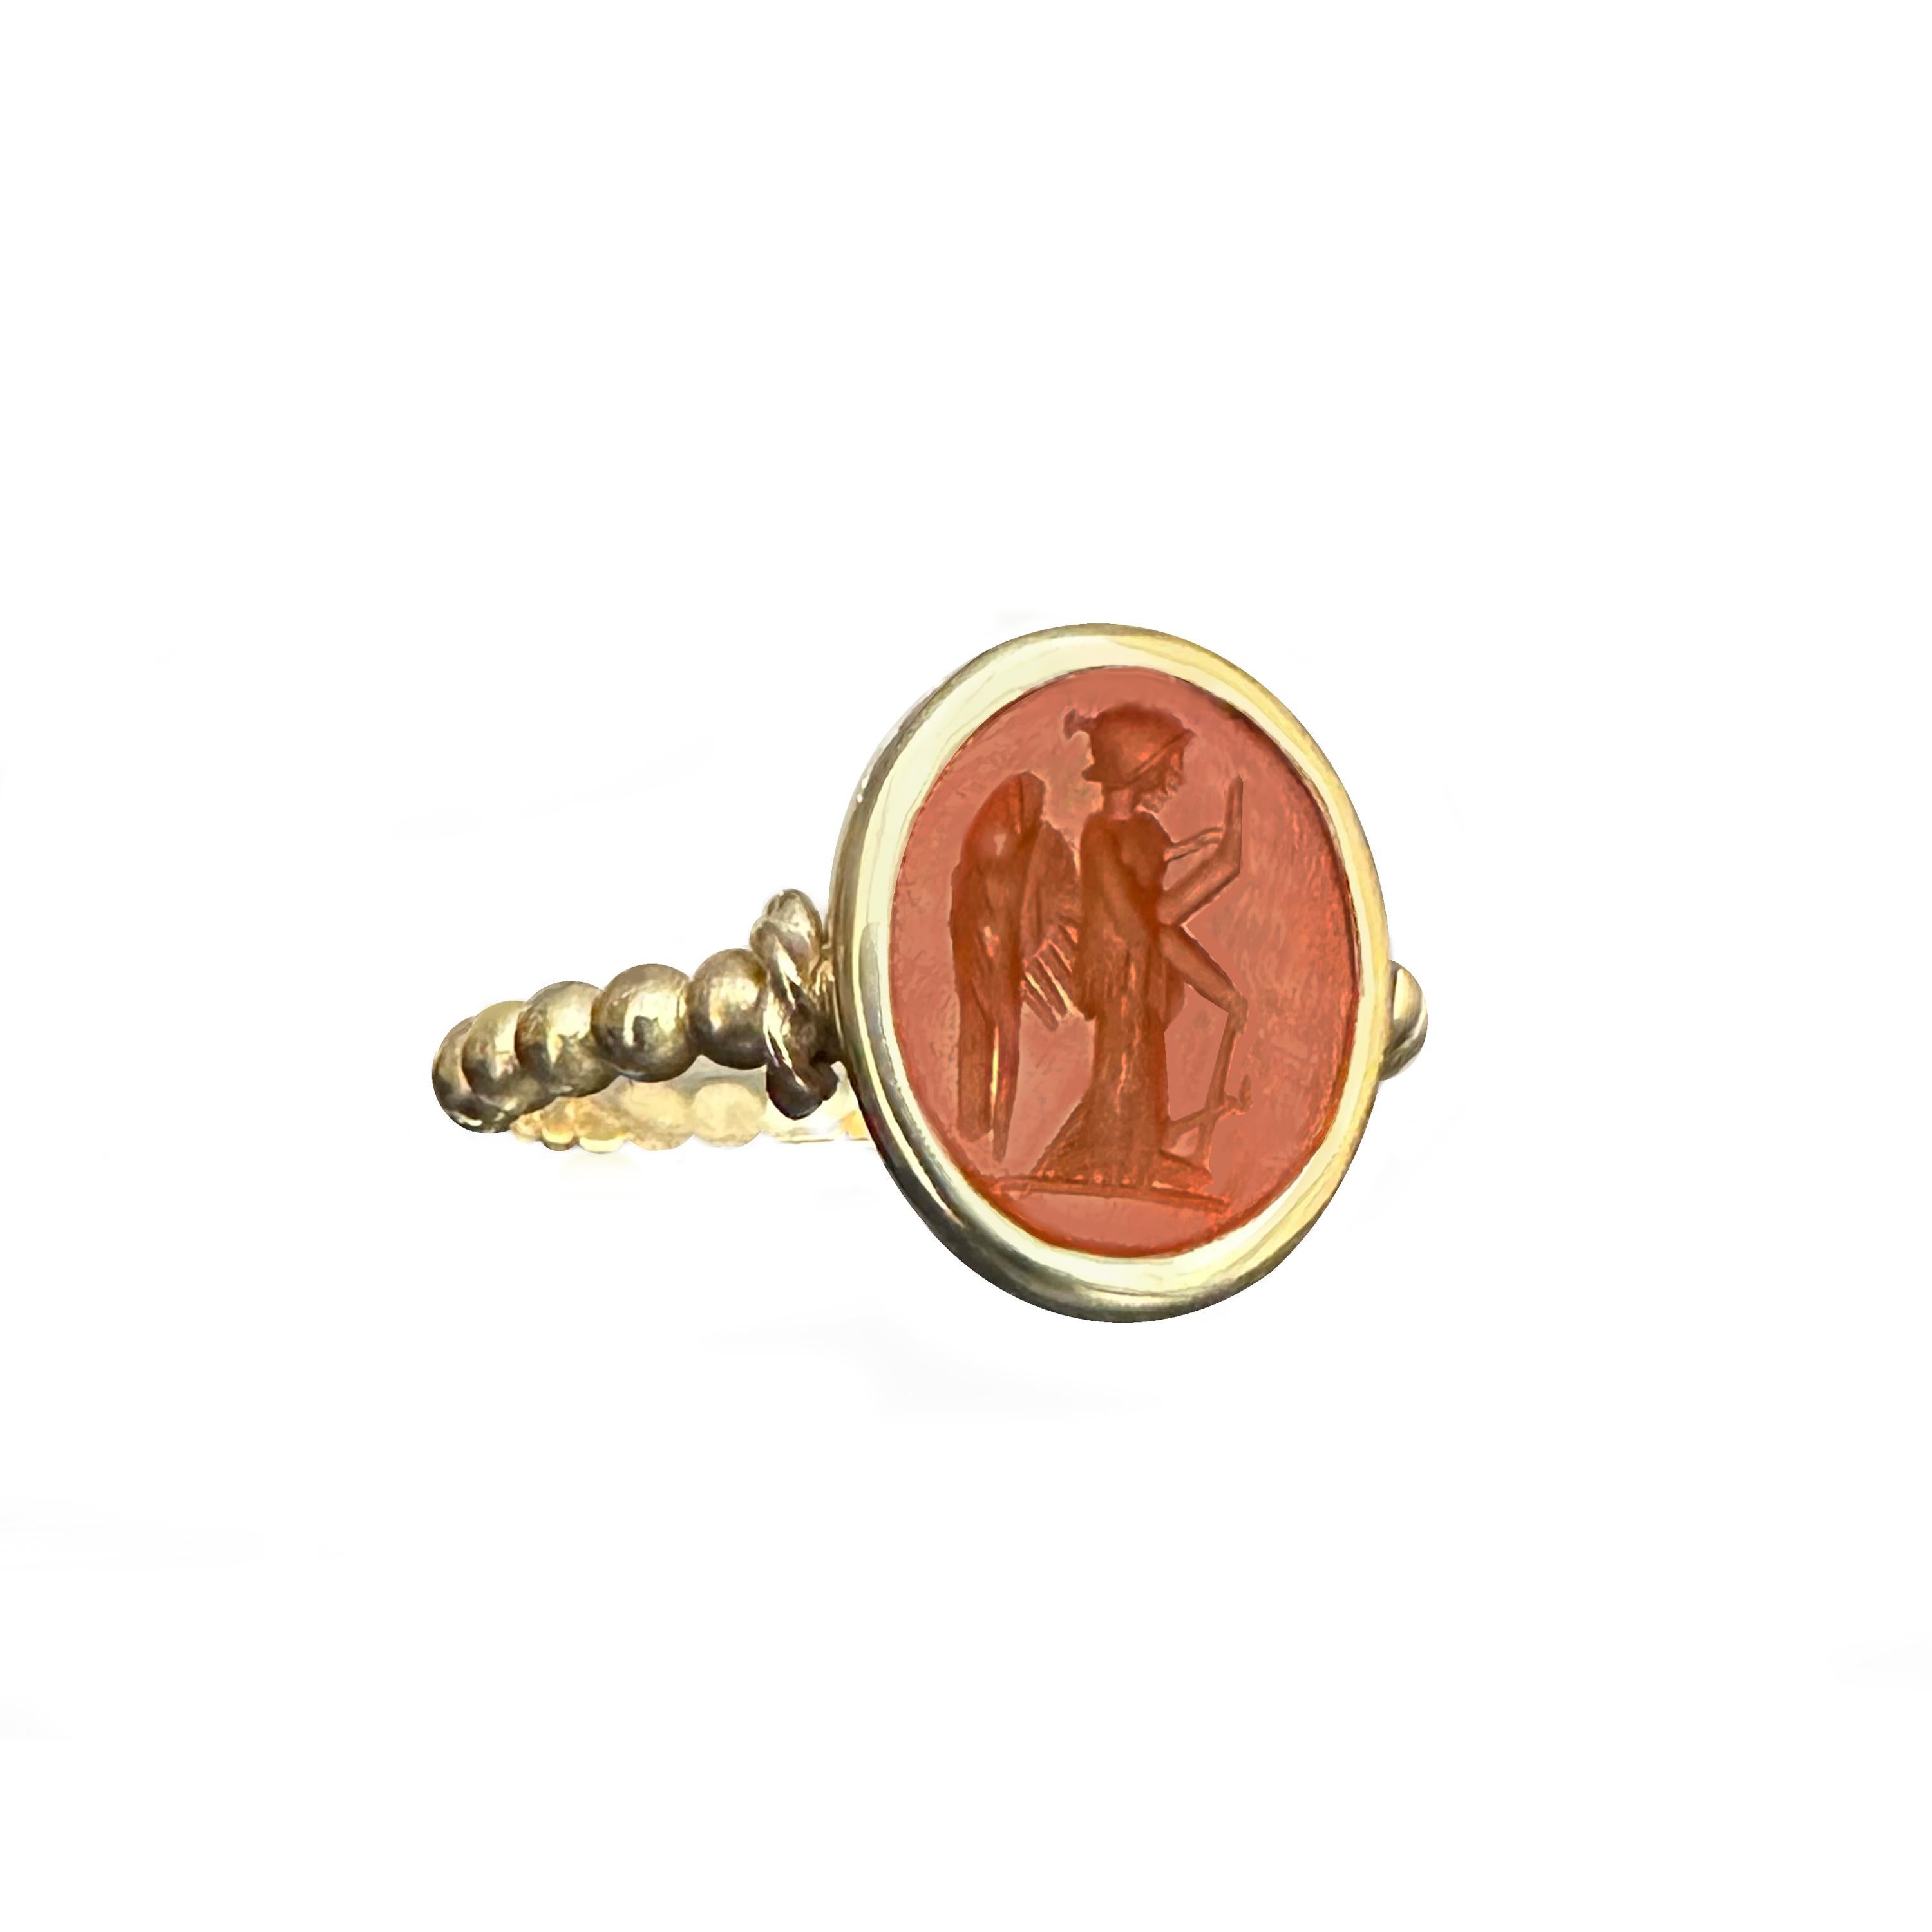 Dieser bezaubernde Ring wurde von unseren geschickten Kunsthandwerkern mit Präzision aus 18-karätigem Gold gefertigt und zeigt eine antike römische Karneol-Intaglio, ein Relikt aus dem 1. bis 2. Jahrhundert nach Christus.

Darin eingraviert ist die